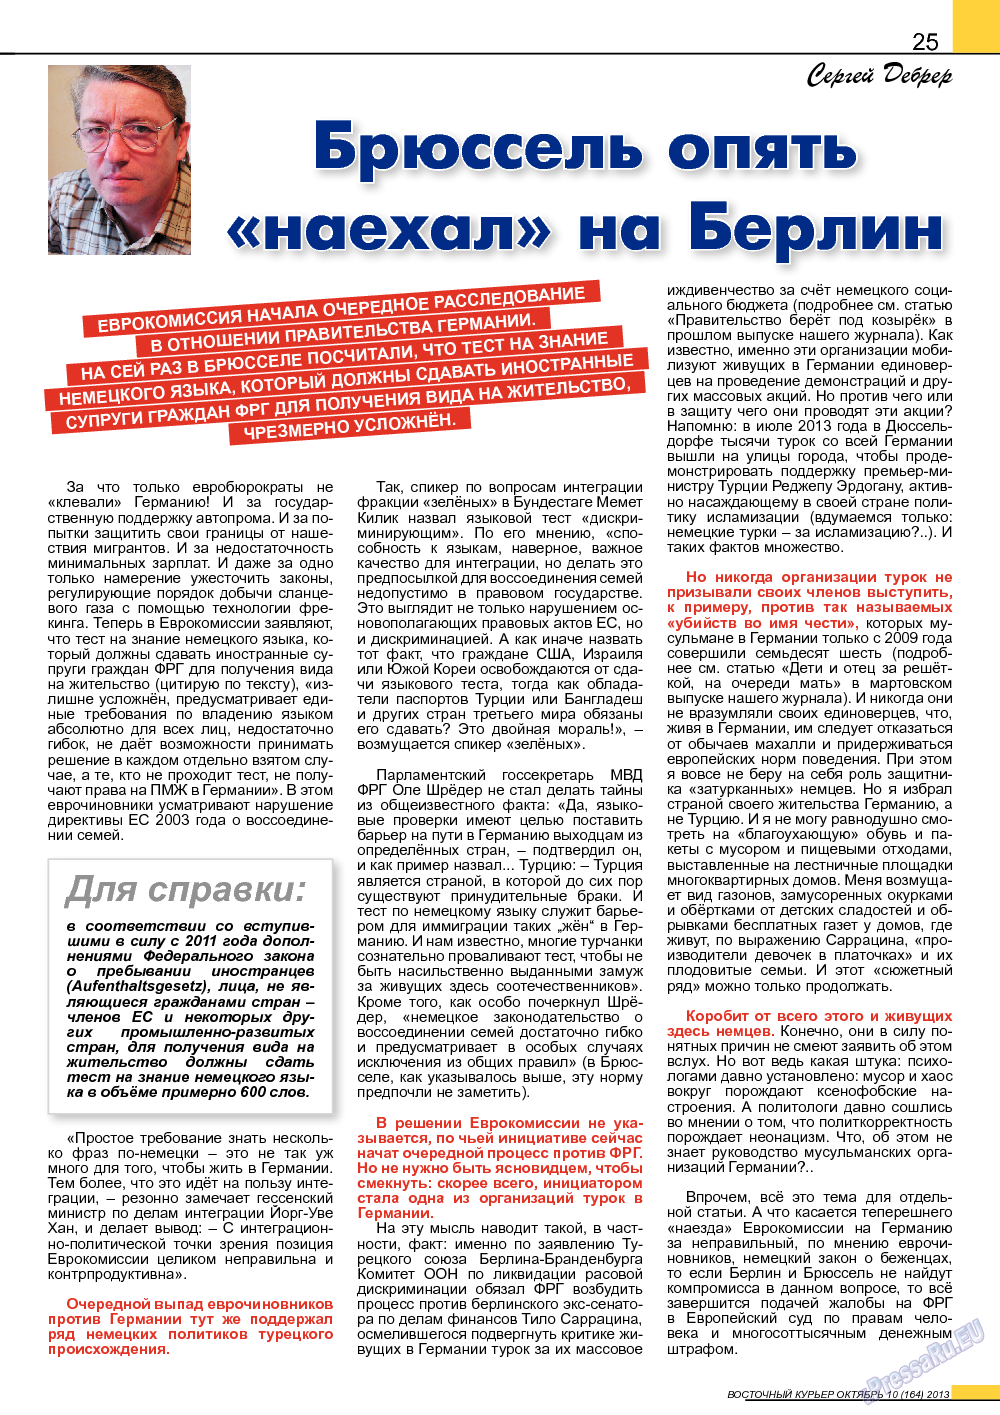 Восточный курьер, журнал. 2013 №10 стр.25